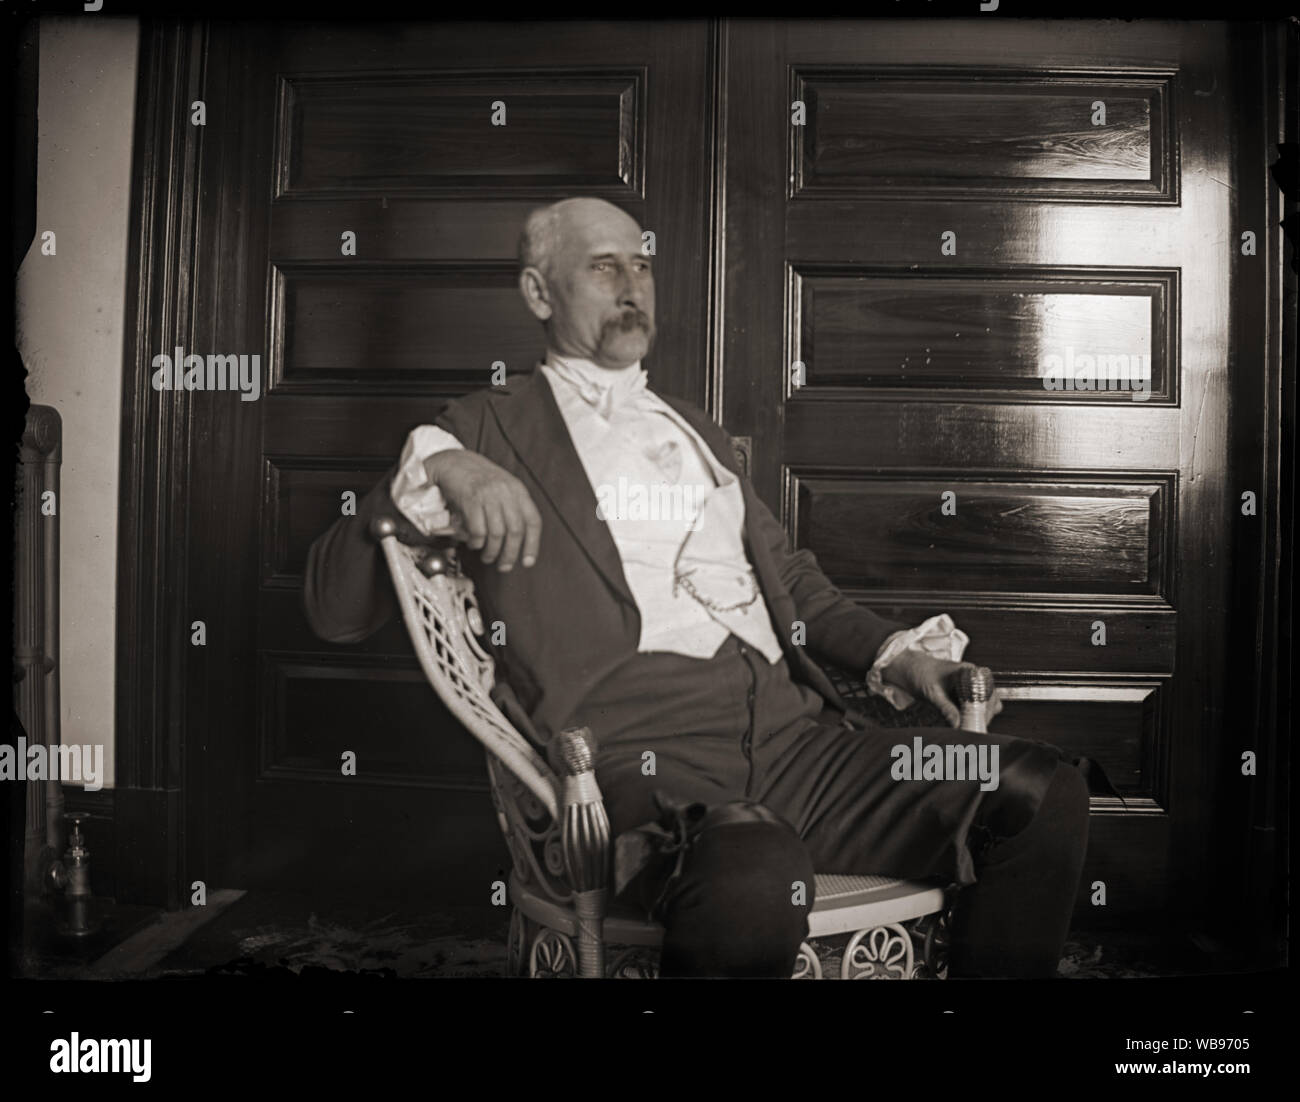 Uomo in una sedia di vimini, indossando coloniale storico con lo stile del periodo di vestiti. Scansione di originali dalla lastra di vetro negativo circa primi 1900s. Foto Stock